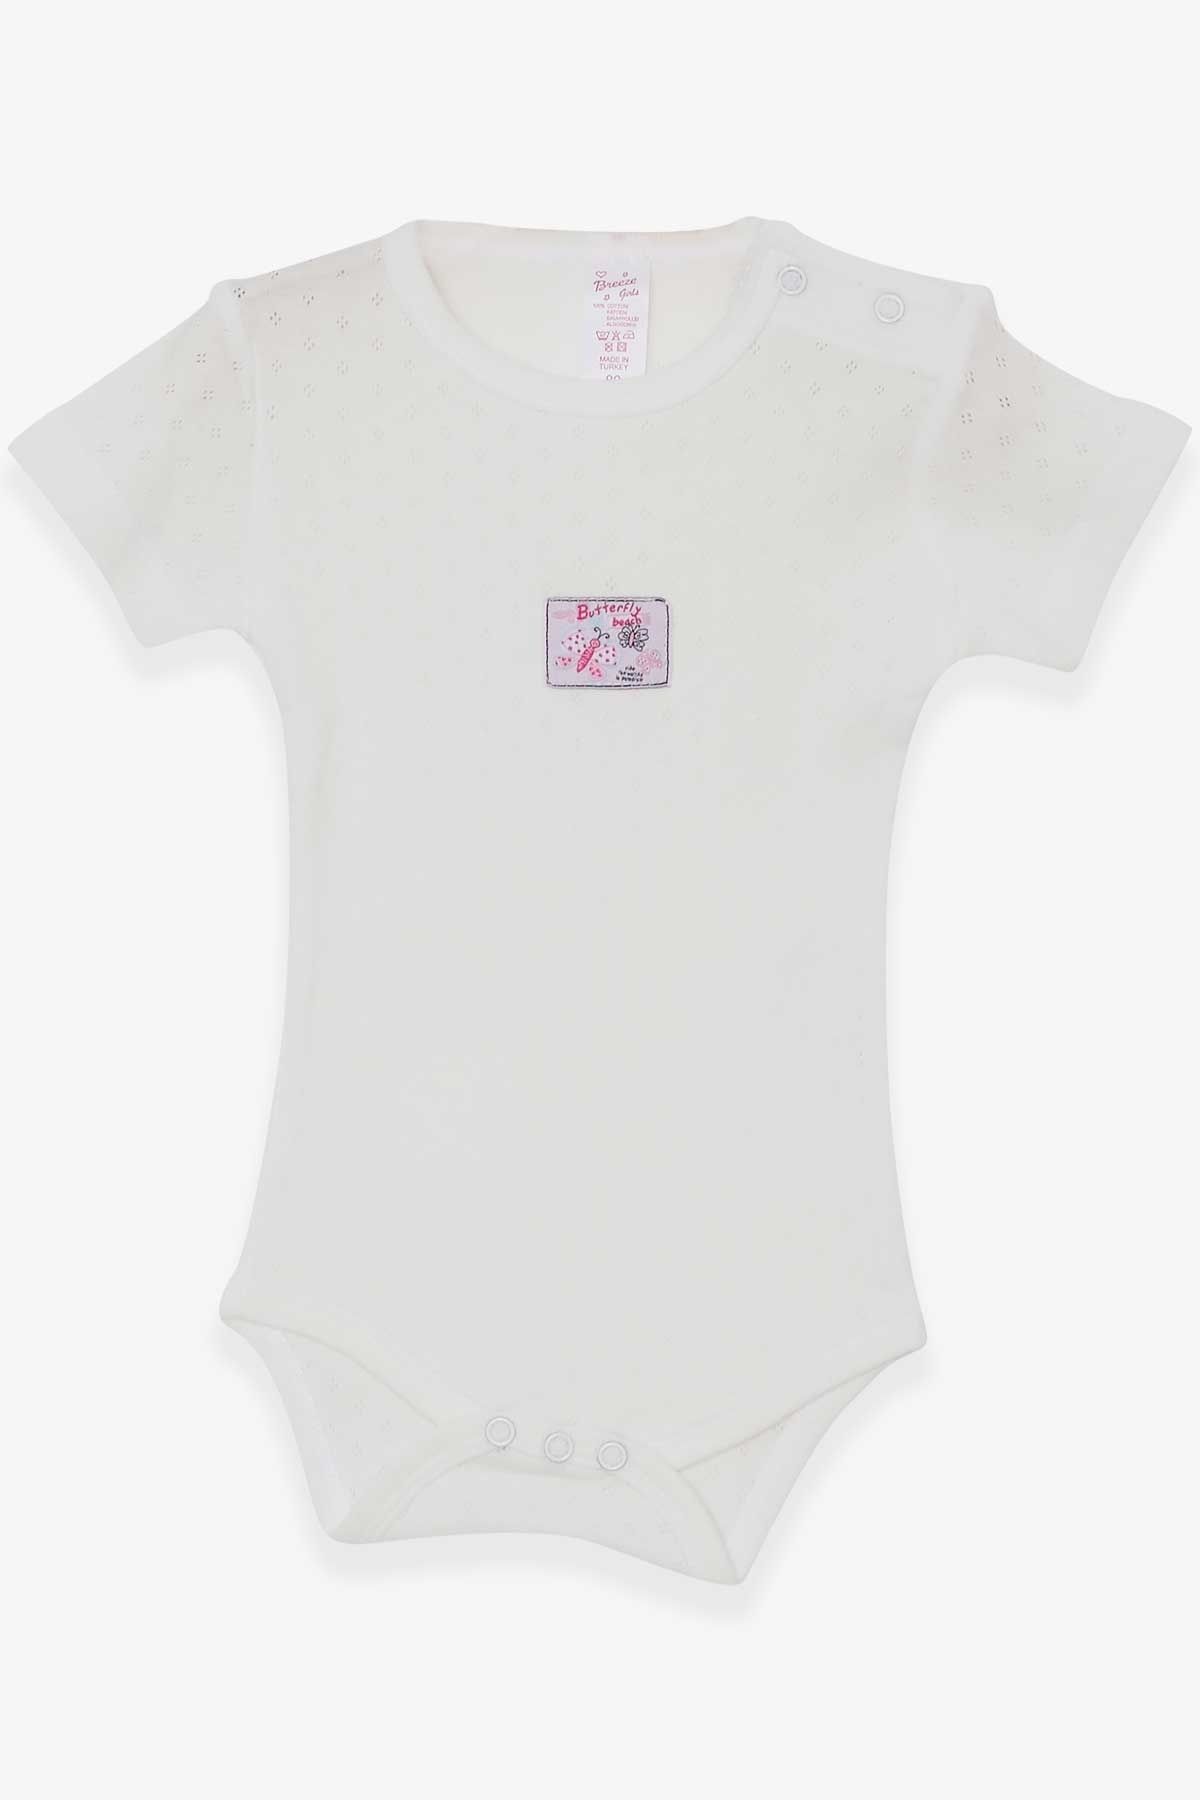 Breeze Kız Bebek Çıtçıtlı Body Jakarlı Arıcık Desenli 9 Ay-3 Yaş, Ekru